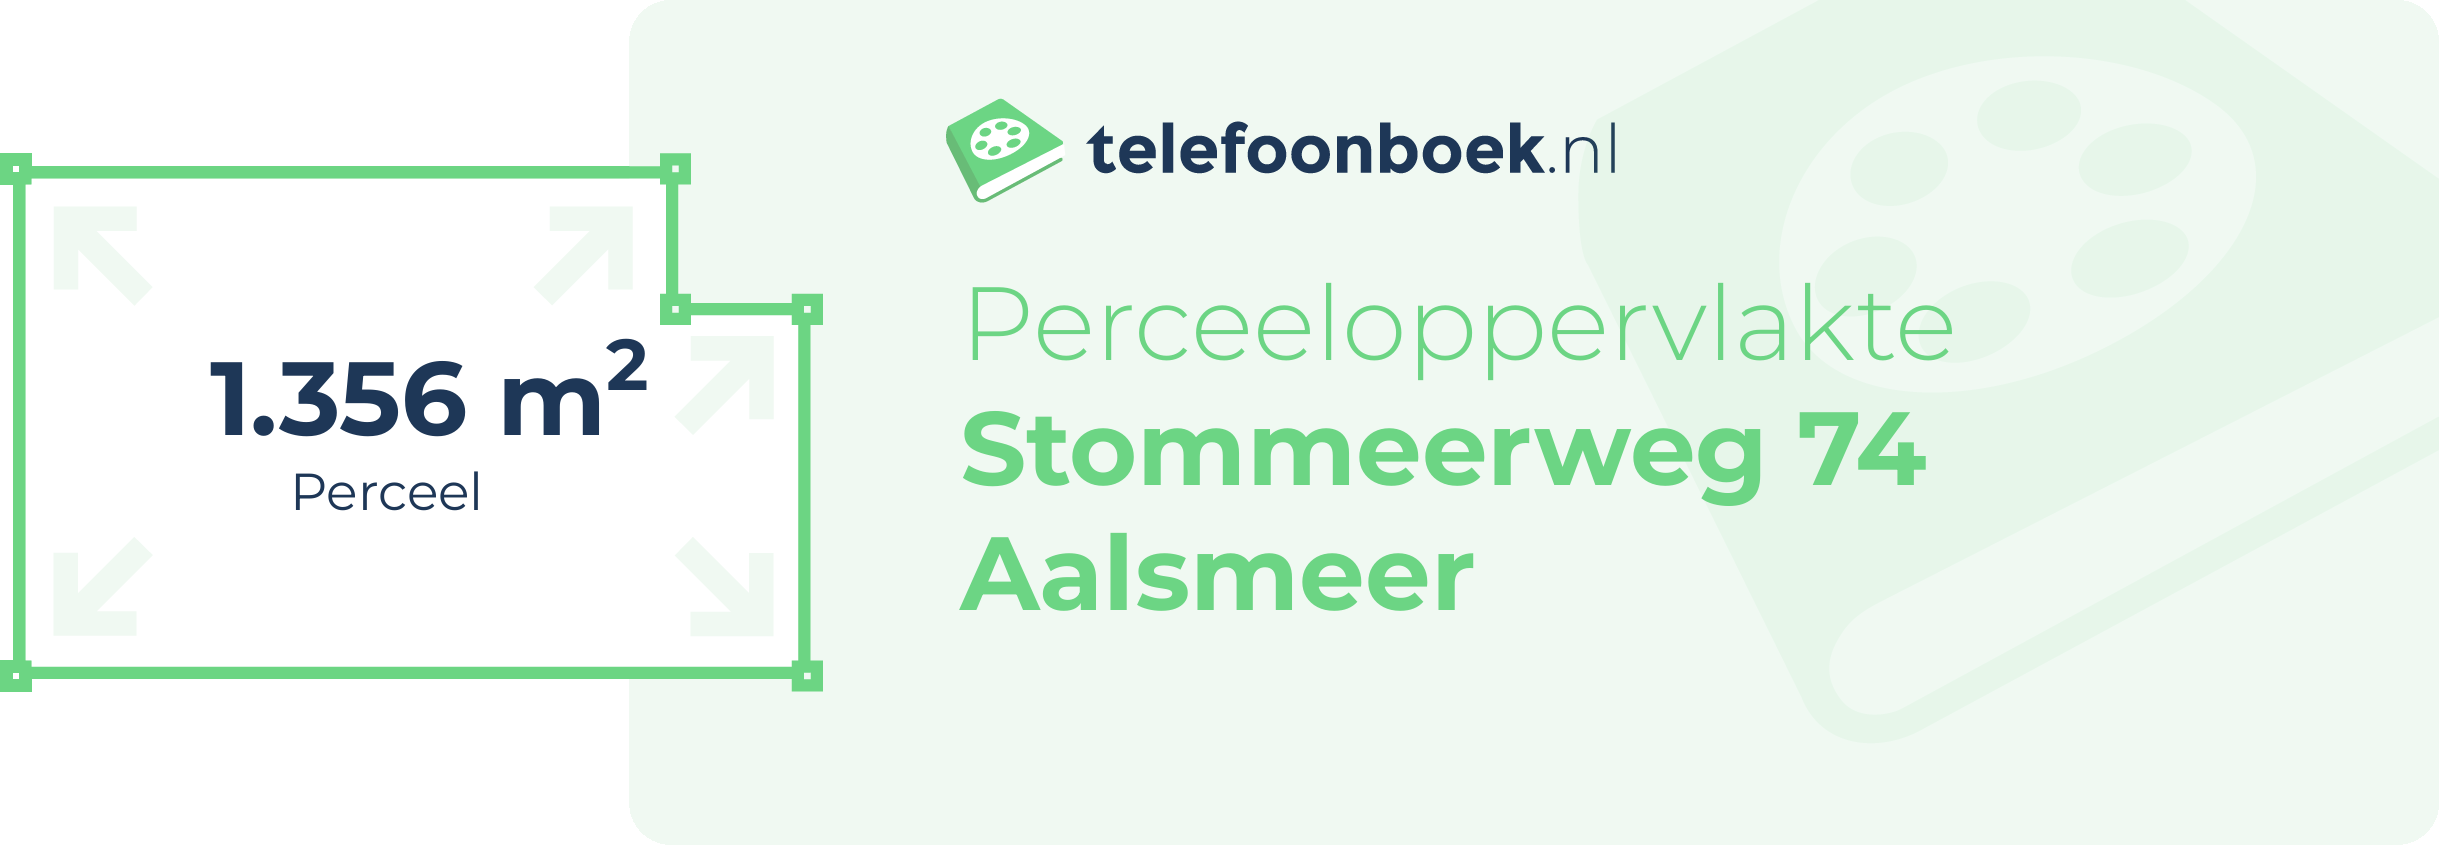 Perceeloppervlakte Stommeerweg 74 Aalsmeer